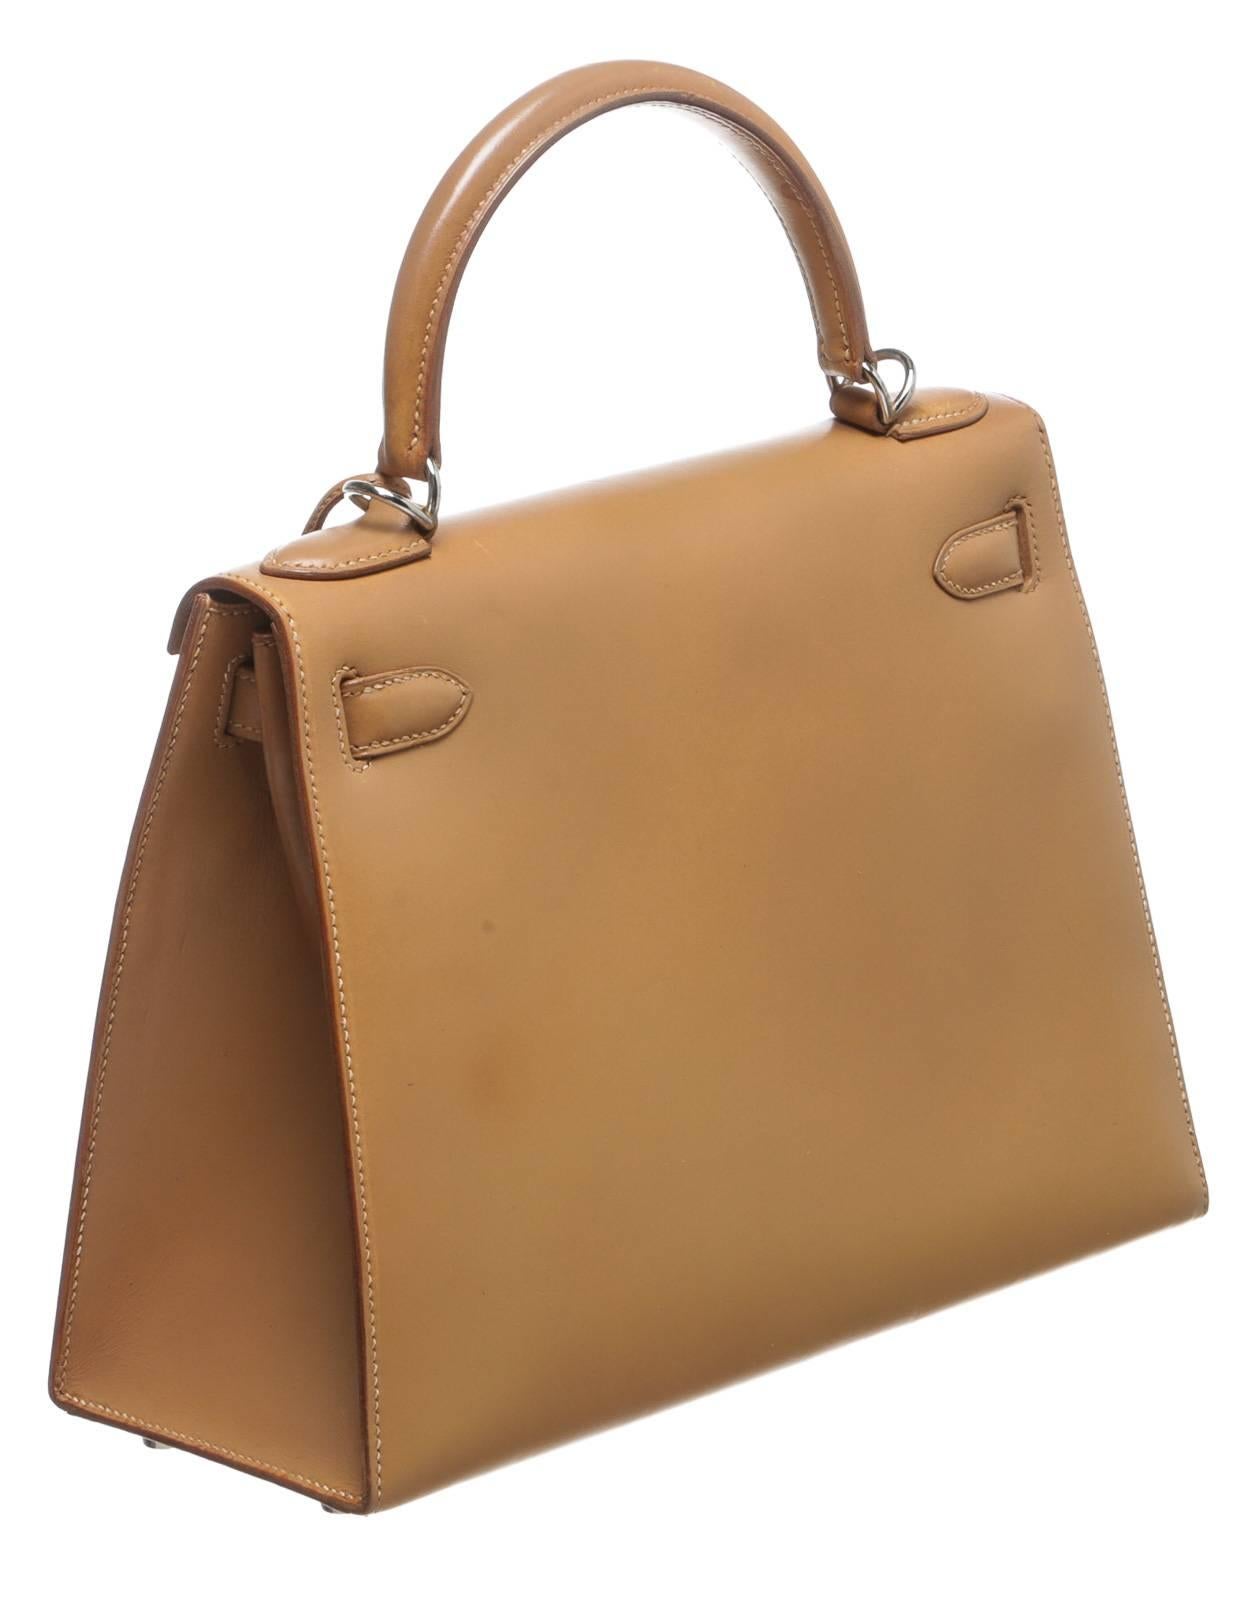 Hermes Natural Leather 32cm Kelly Handbag SHW For Sale 1